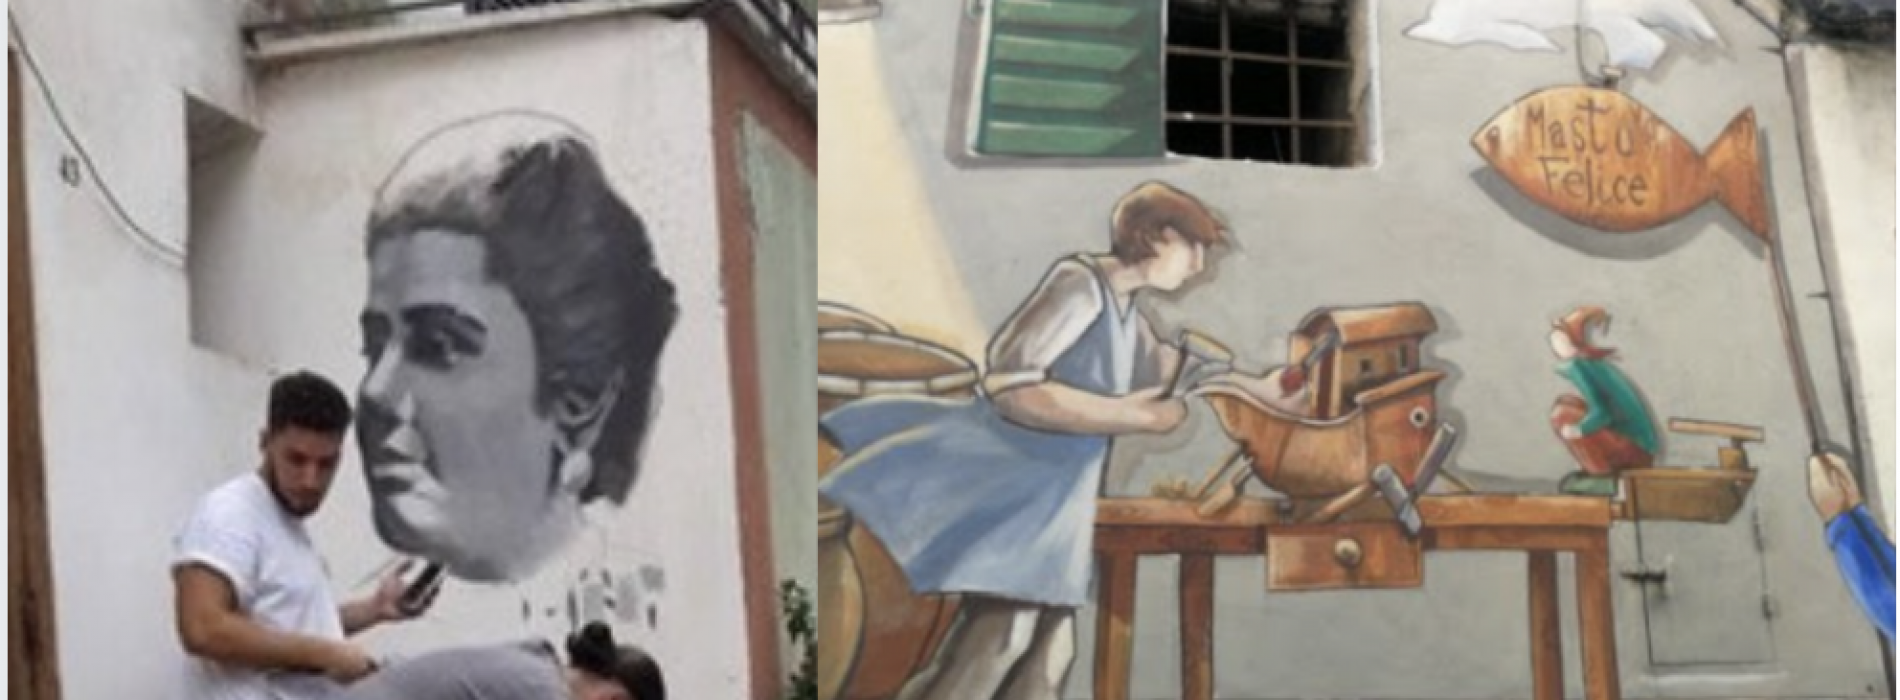 Un borgo fatto ad arte, a Valogno i folletti con Matilde Serao